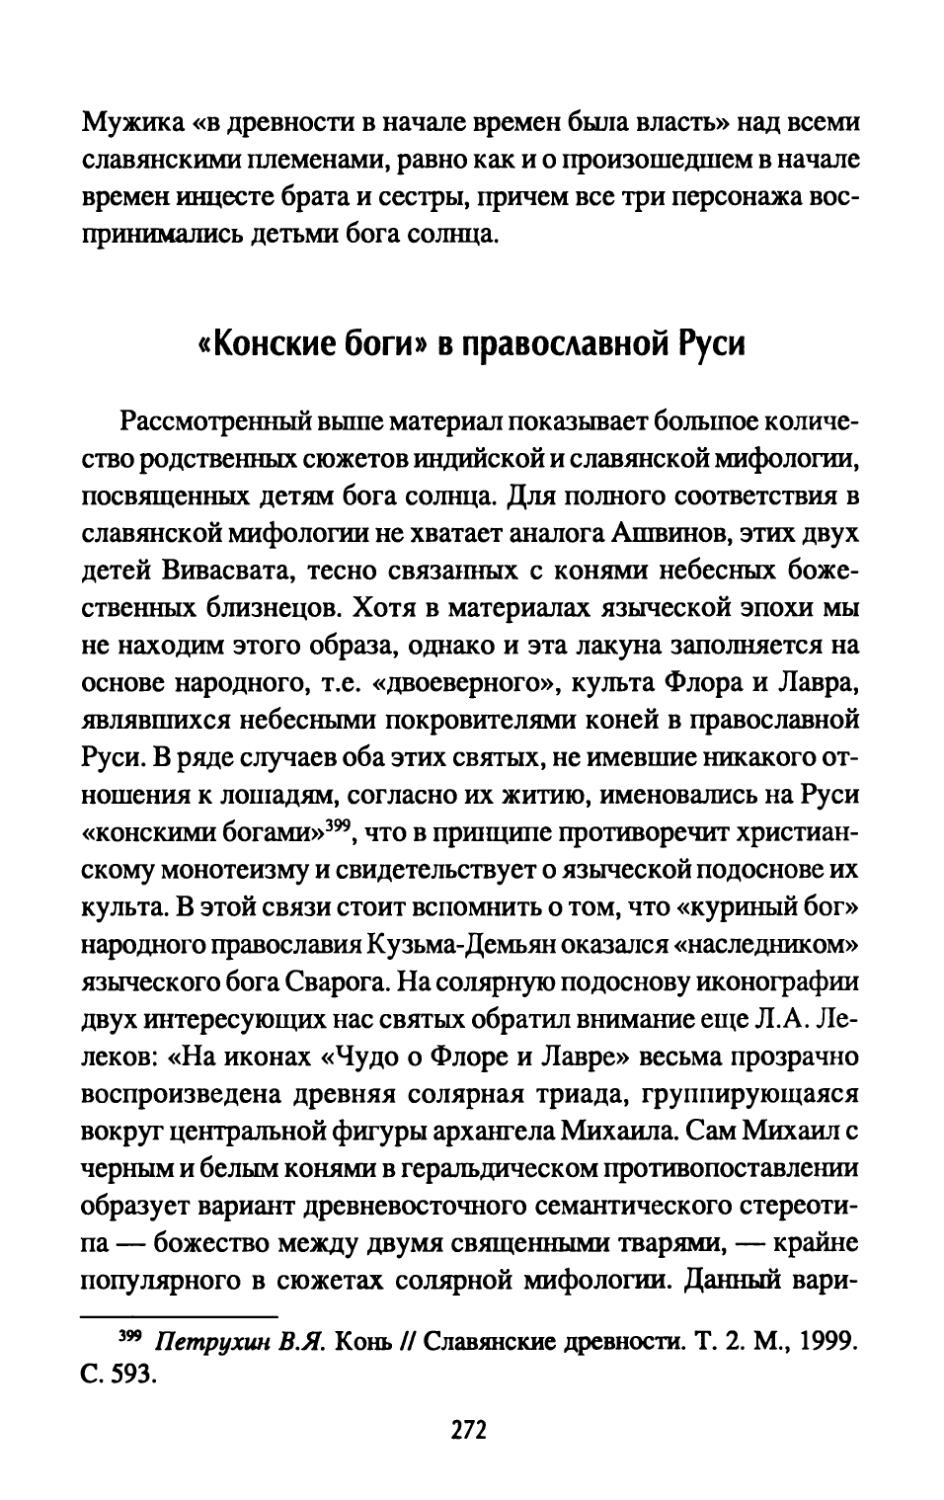 «Конские боги» в православной Руси